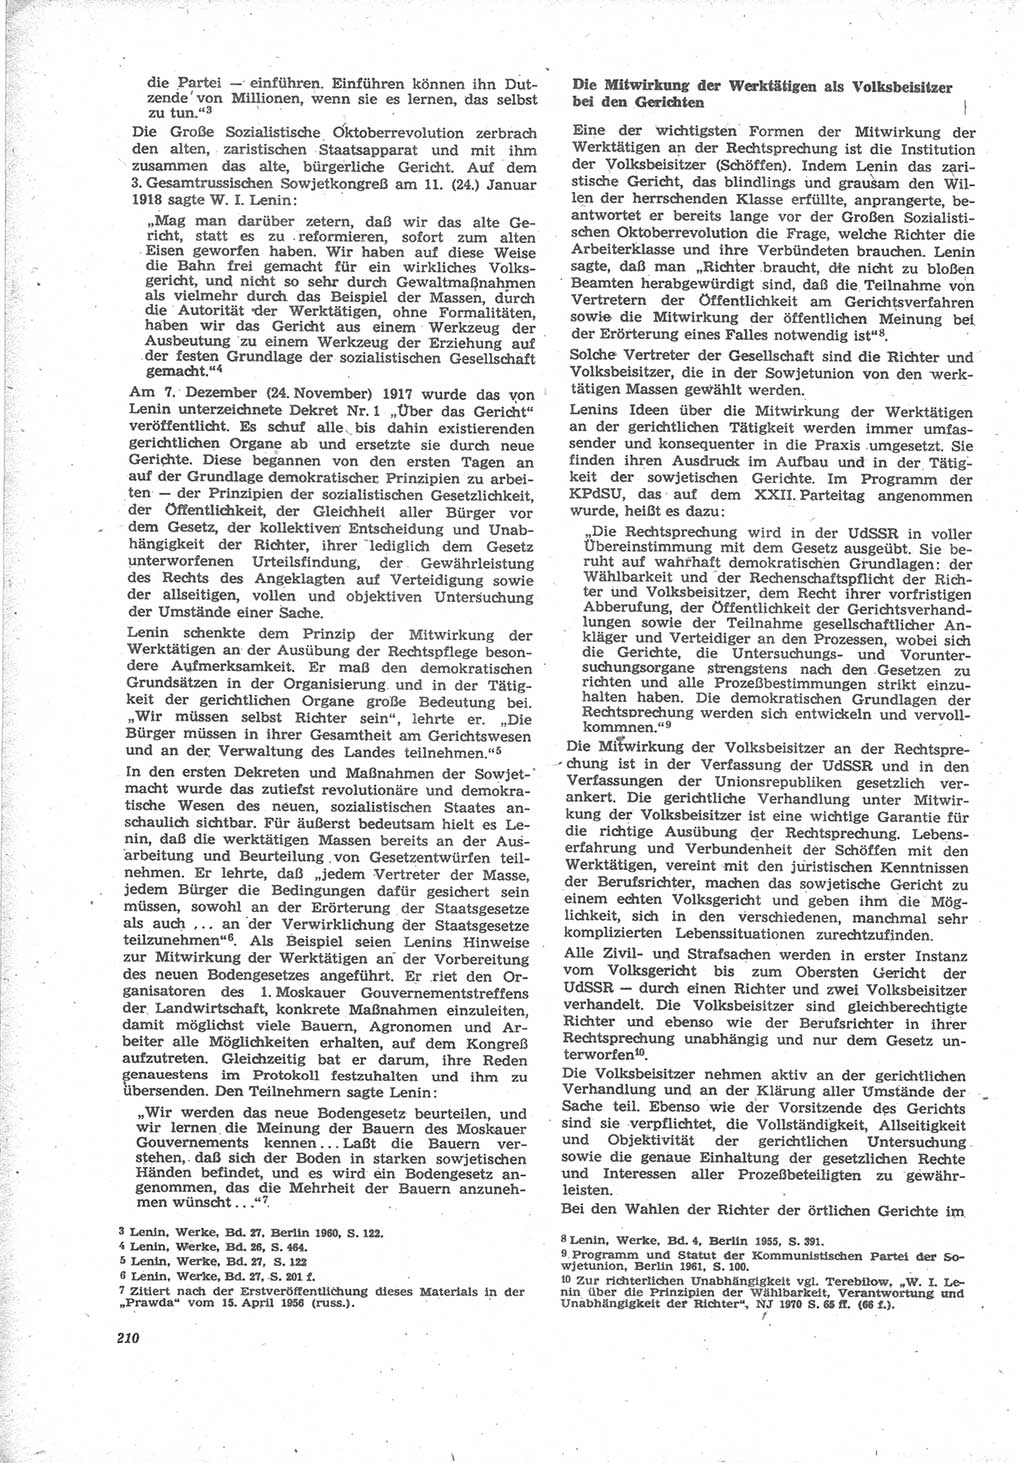 Neue Justiz (NJ), Zeitschrift für Recht und Rechtswissenschaft [Deutsche Demokratische Republik (DDR)], 24. Jahrgang 1970, Seite 210 (NJ DDR 1970, S. 210)